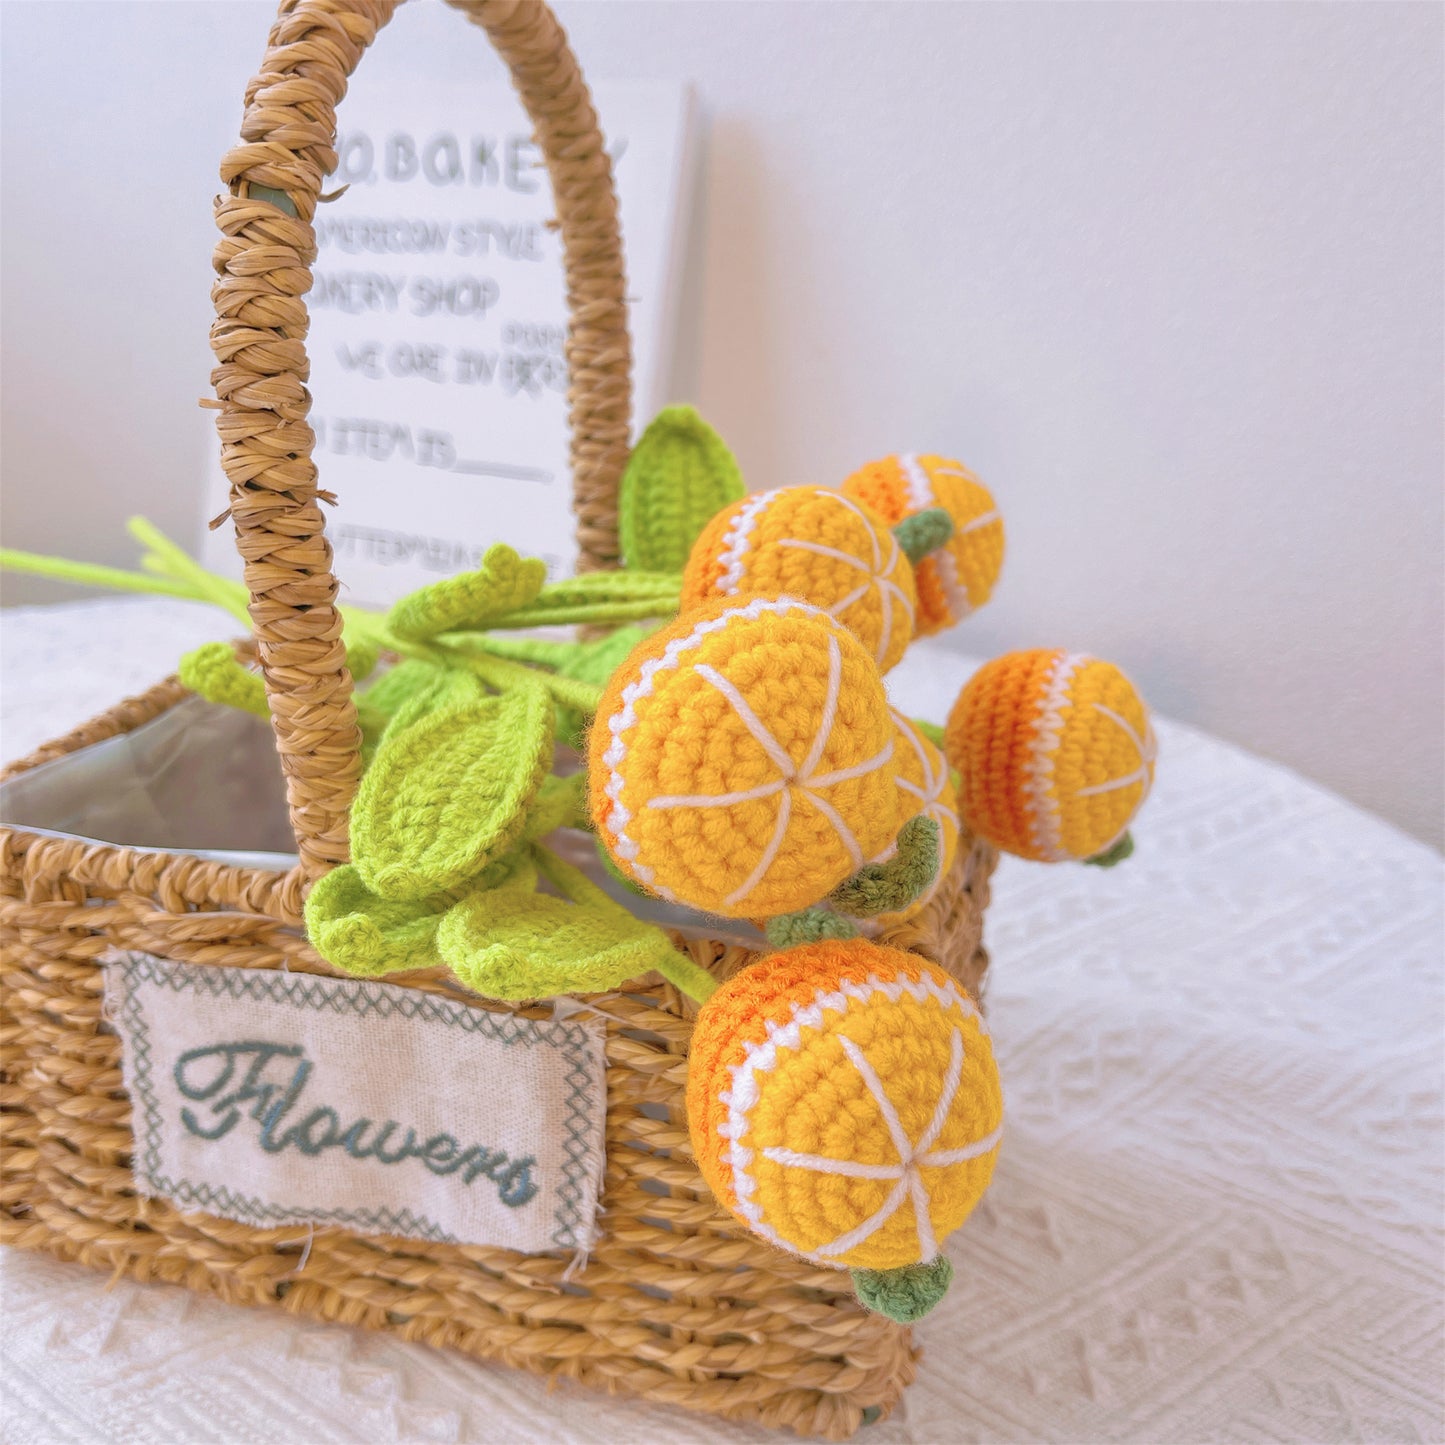 Vibrant Orange Burst : Piquet orange au crochet fabriqué à la main pour un décor de jardin joyeux et un cadeau significatif